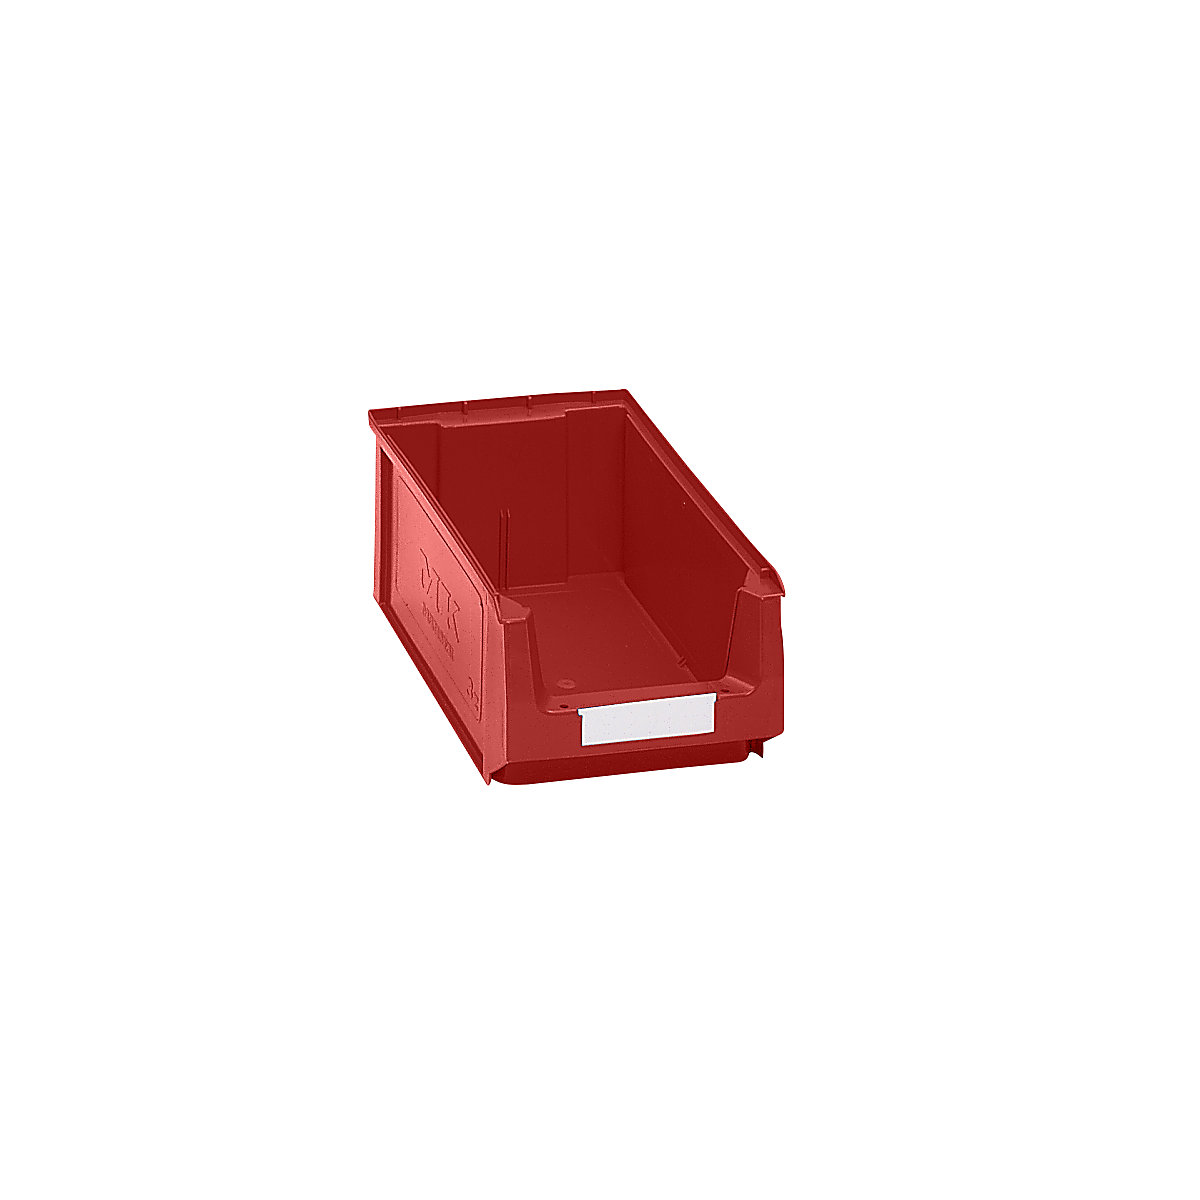 Přepravka s viditelným obsahem z polyetylénu – mauser, d x š x v 350 x 210 x 140 mm, červená, bal.j. 14 ks-6